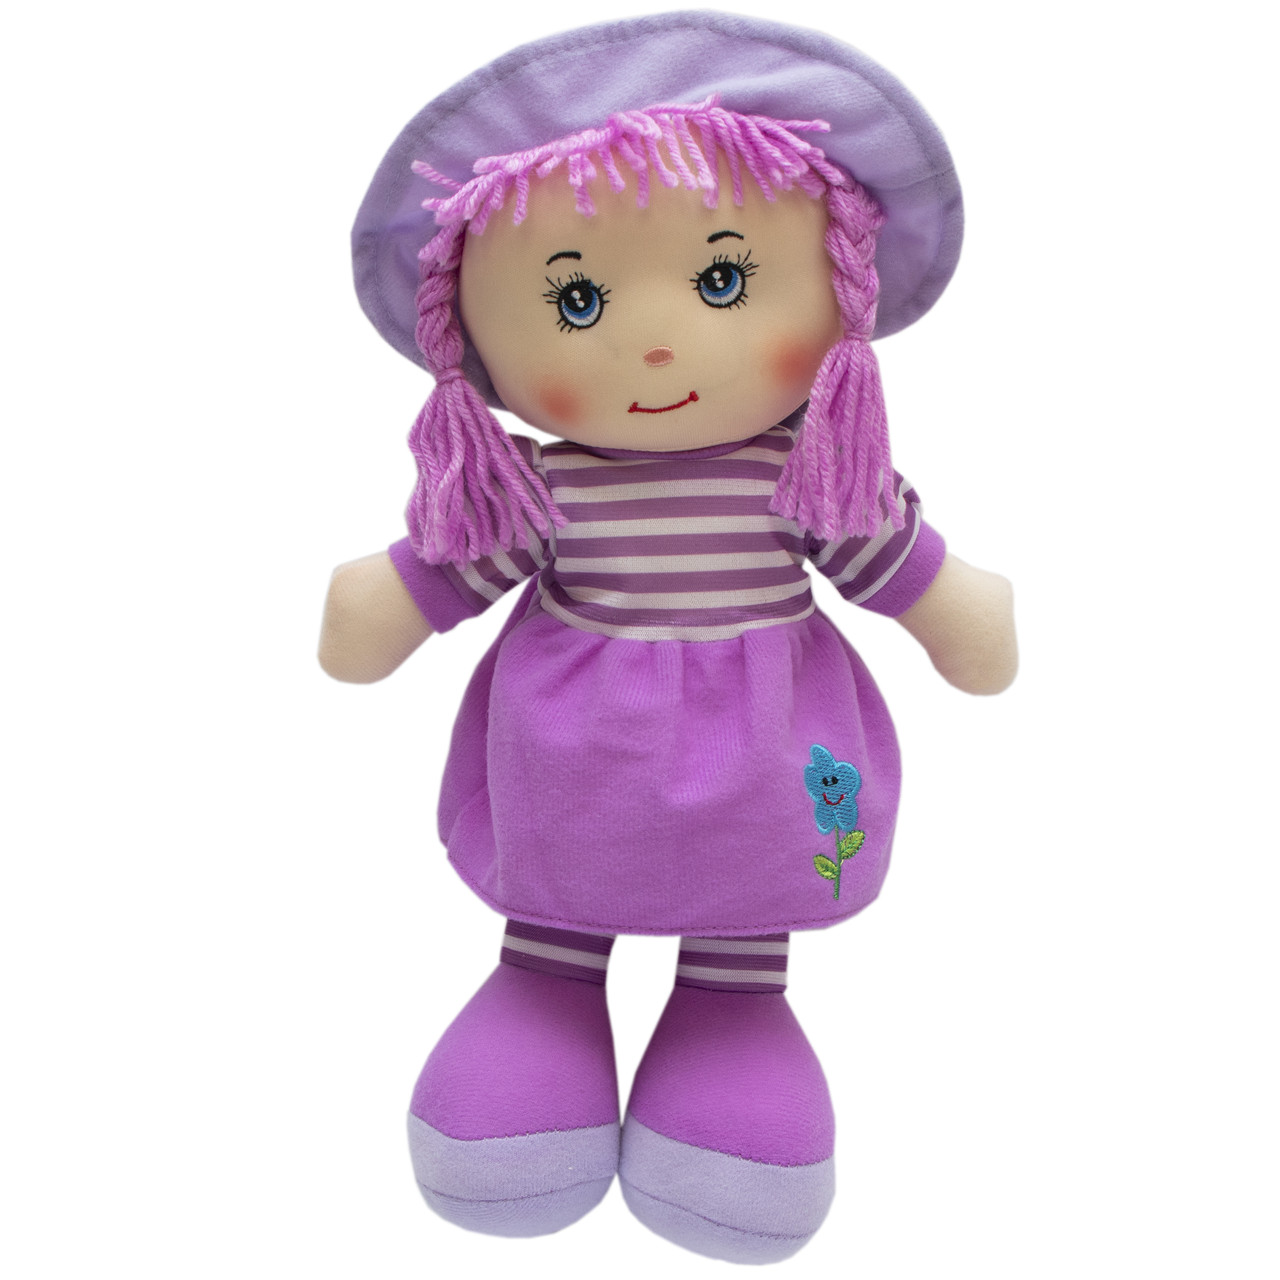 М'яка іграшка лялька з вишитим обличчям, 36 см, фіолетова сукня (860944)